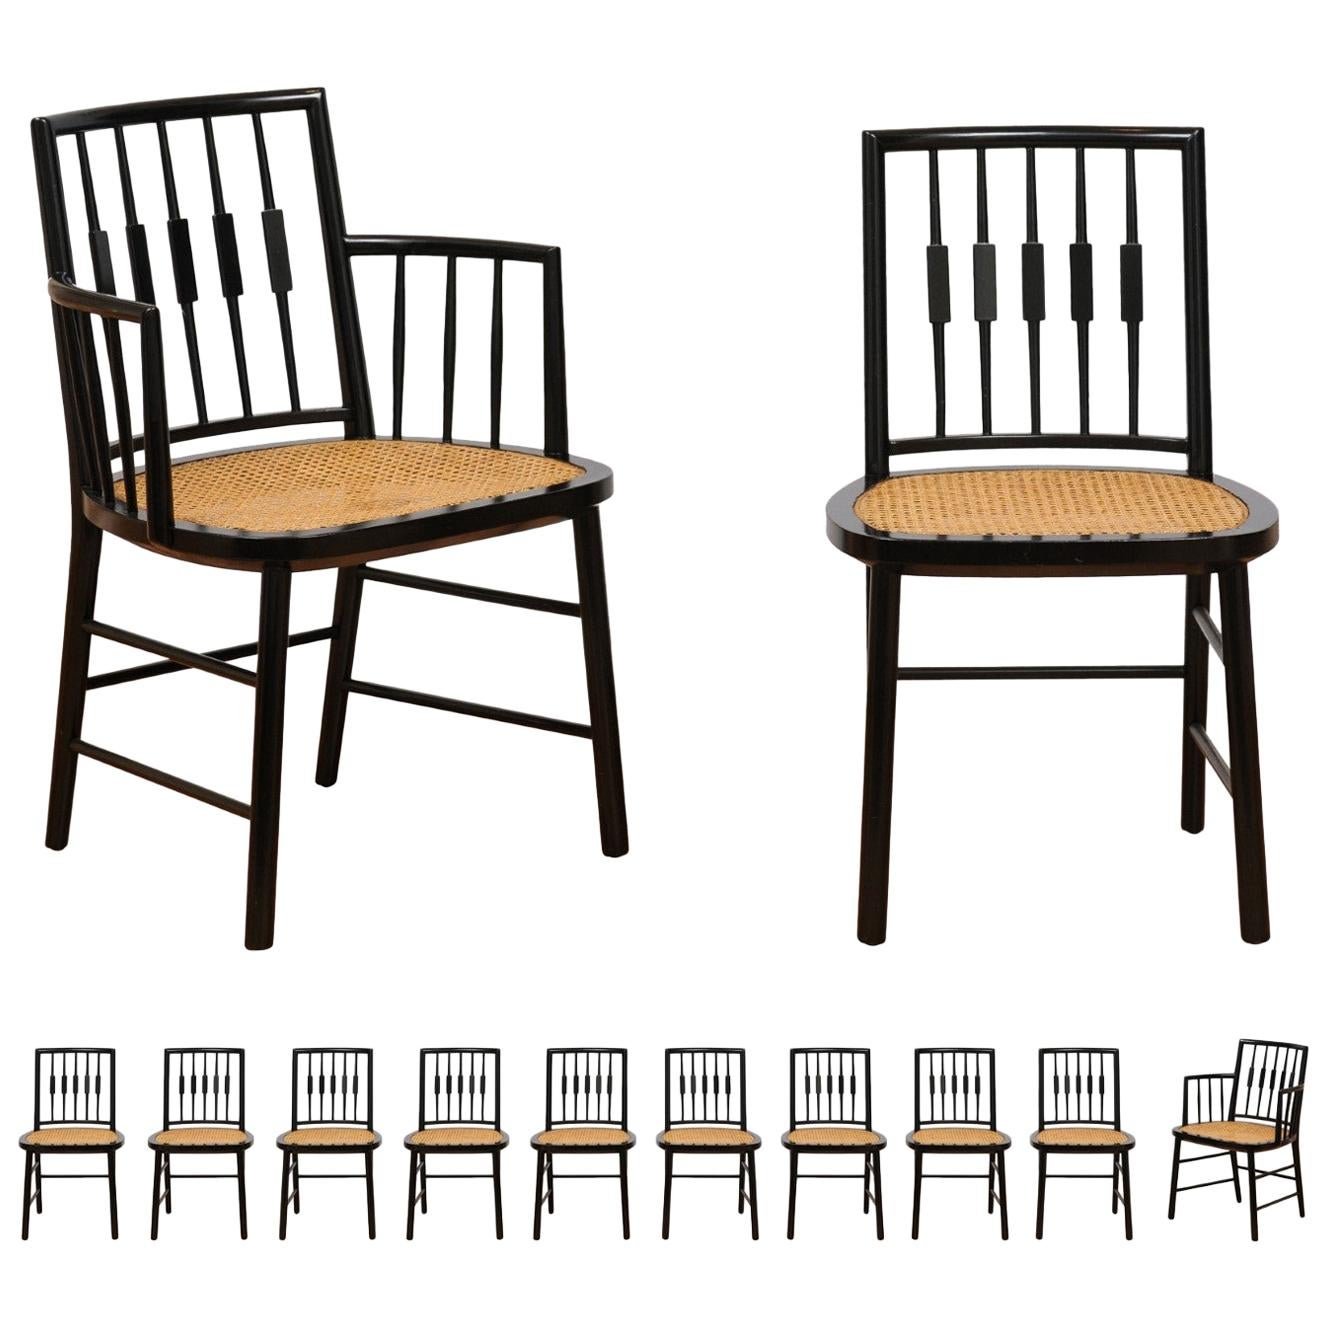 Ensemble Stellar de 12 chaises Windsor modernes de Michael Taylor, sièges en rotin